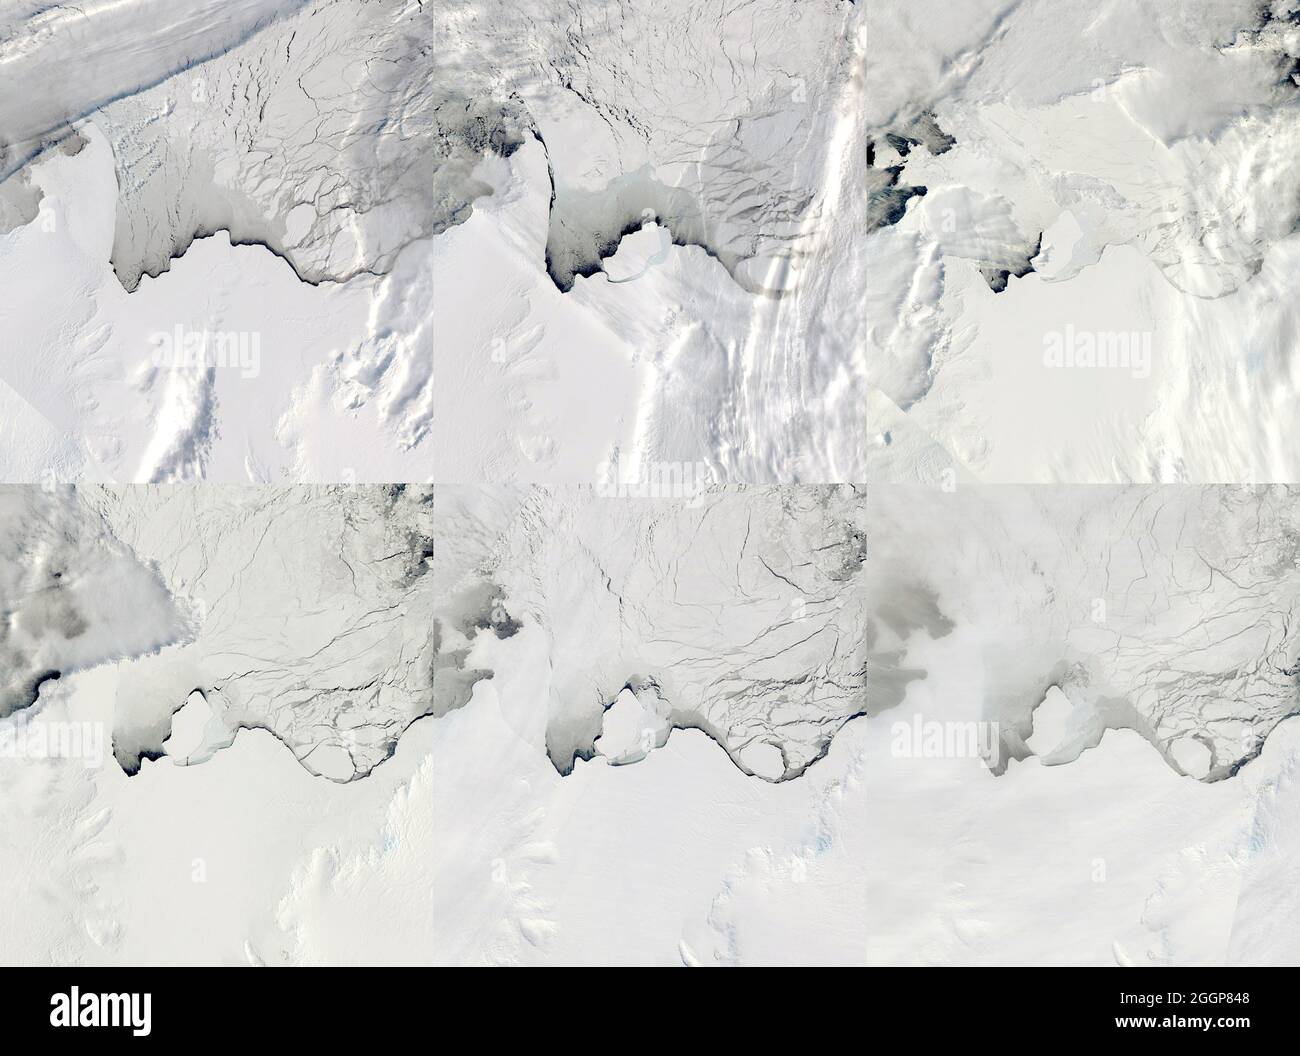 Zusammengesetzt aus sechs Satellitenbildern, die zwischen dem 13. September und dem 2. Oktober 2019 aufgenommen wurden, zeigen die Gletscherspaltungen und das Kalben eines Eisbergs aus dem Amery-Schelfeis der Ostantarktis. Stockfoto